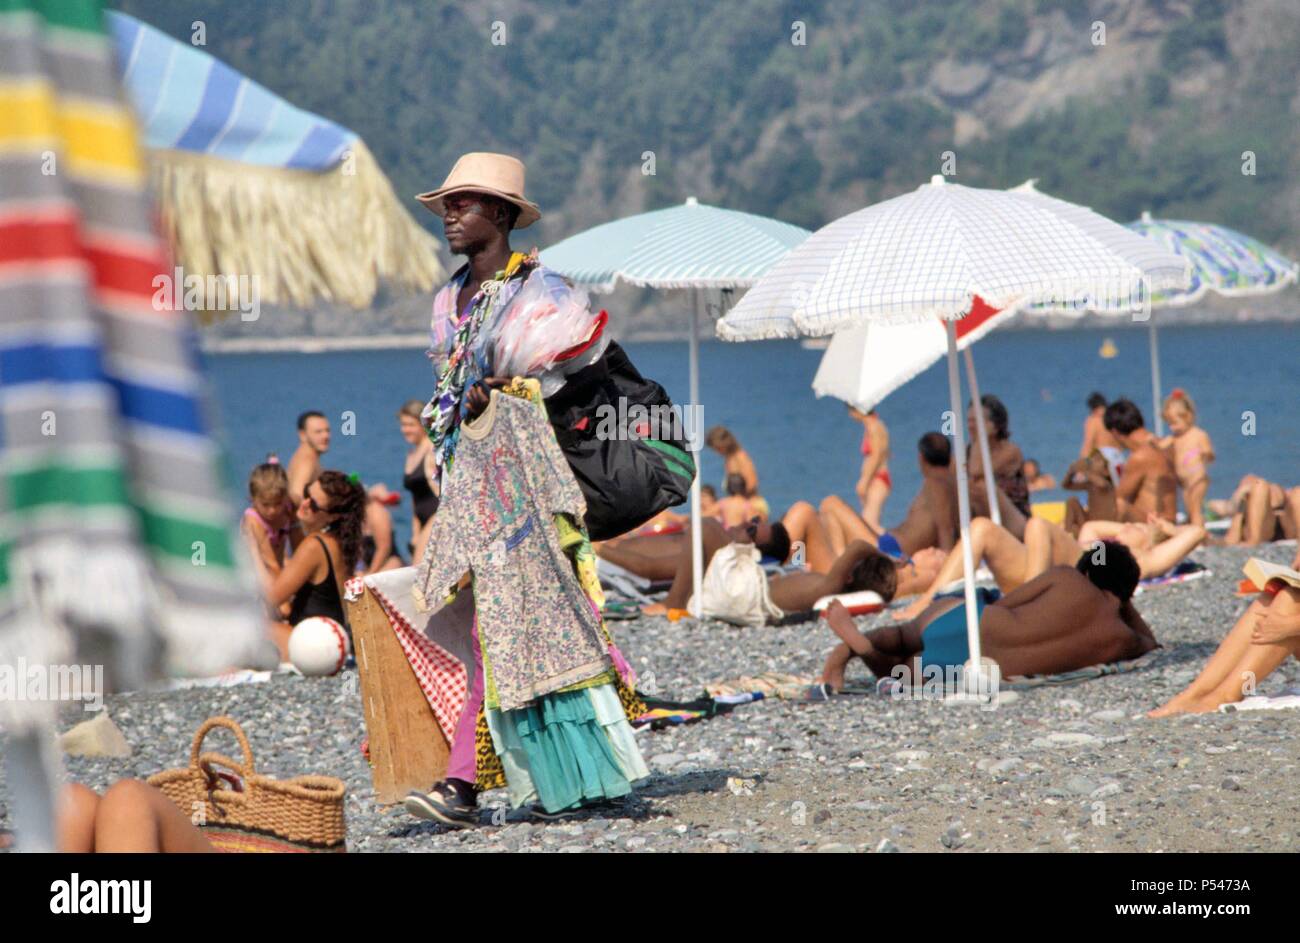 Afrikanische Einwanderer street vendor am Strand von Riva Trigoso (Ligurien, Italien) - venditore ambulante immigrato Africano sulla Spiaggia di Riva Trigoso (Ligurien, Italien) Stockfoto